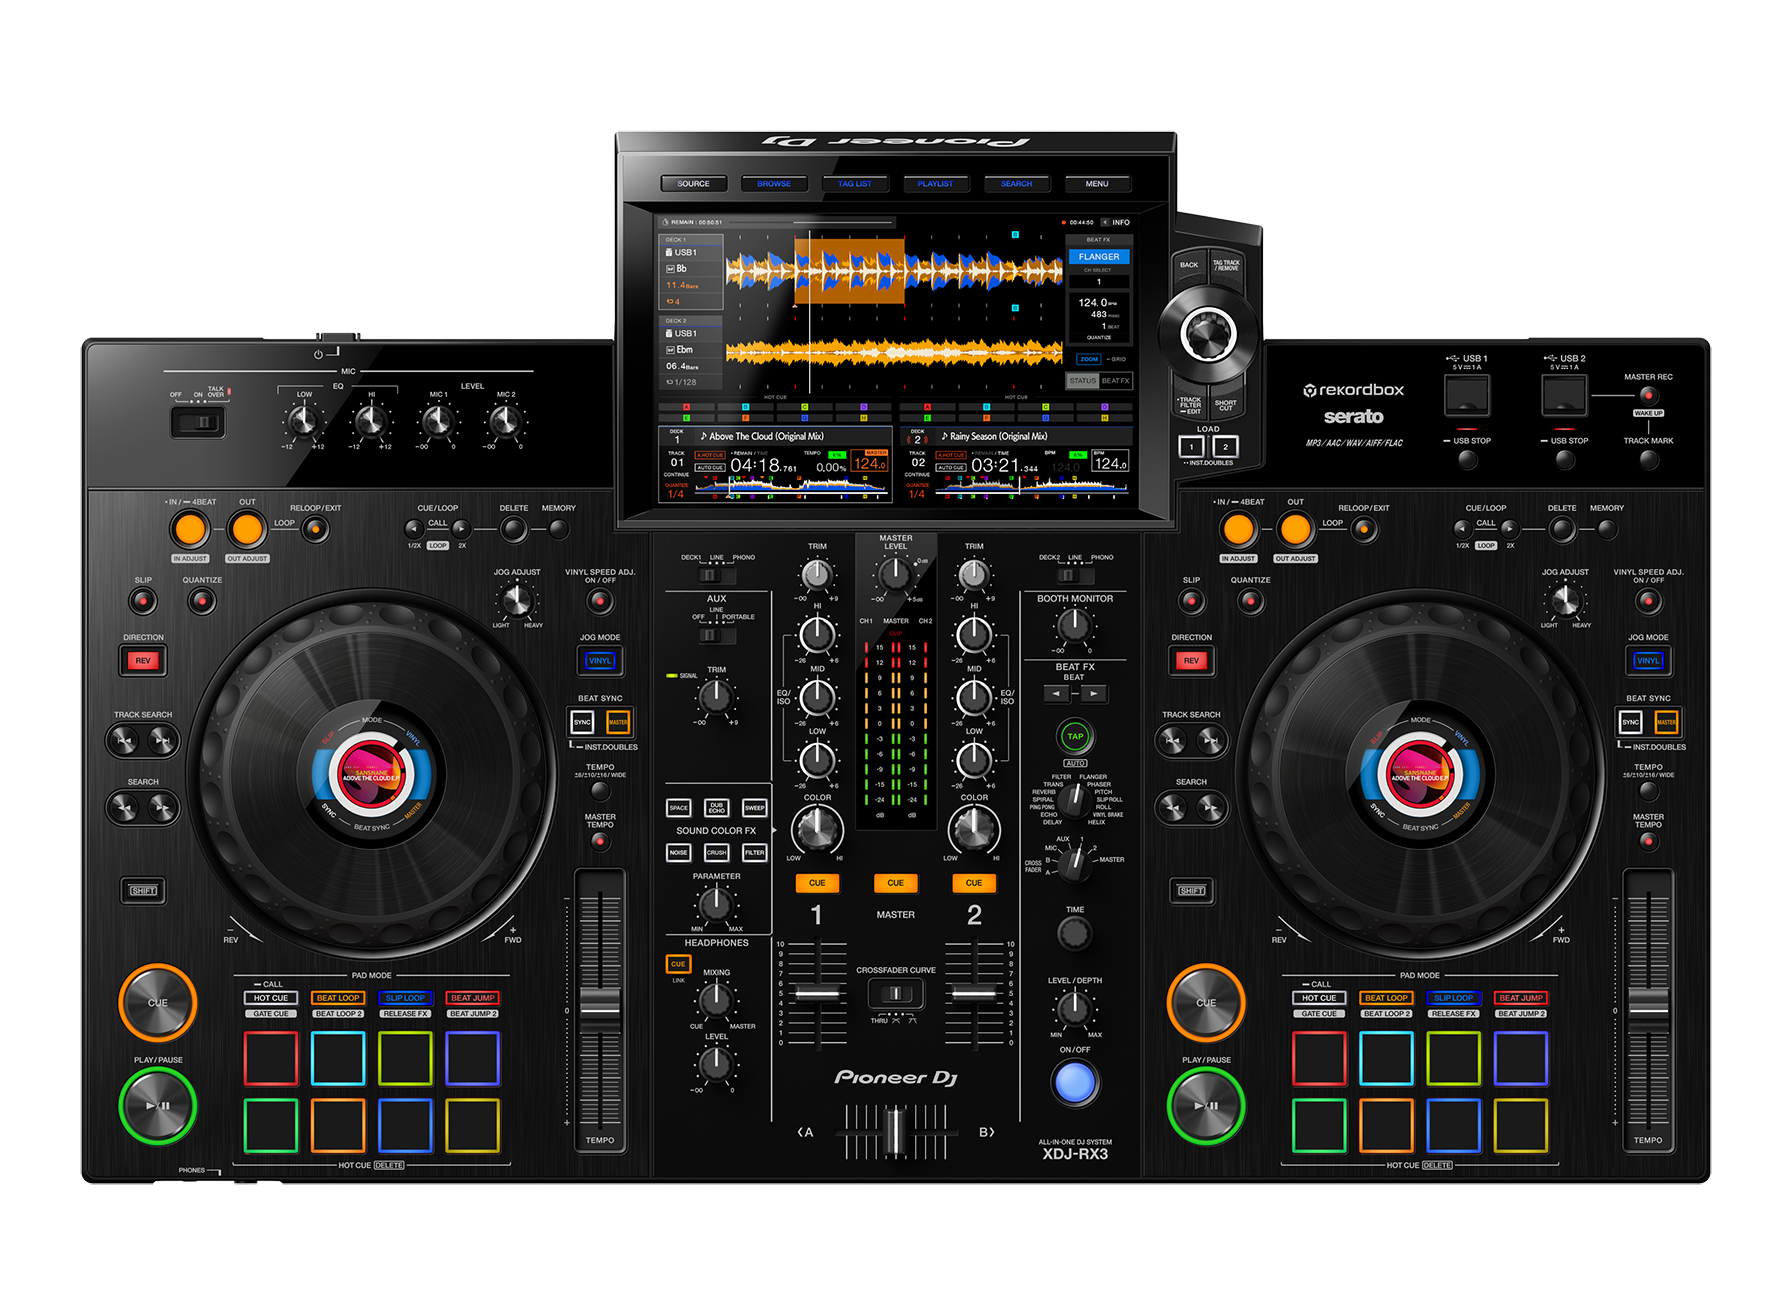 *10.1インチのタッチディスプレイを搭載したオールインワンDJシステム Pioneer DJ ( パイオニア DJ )が、10.1インチのタッチディスプレイを搭載したオールインワンDJシステム「XDJ-RX3」を発売します。 XDJ-RX3は、10.1インチのタッチディスプレイを搭載、直感的なブラ […]